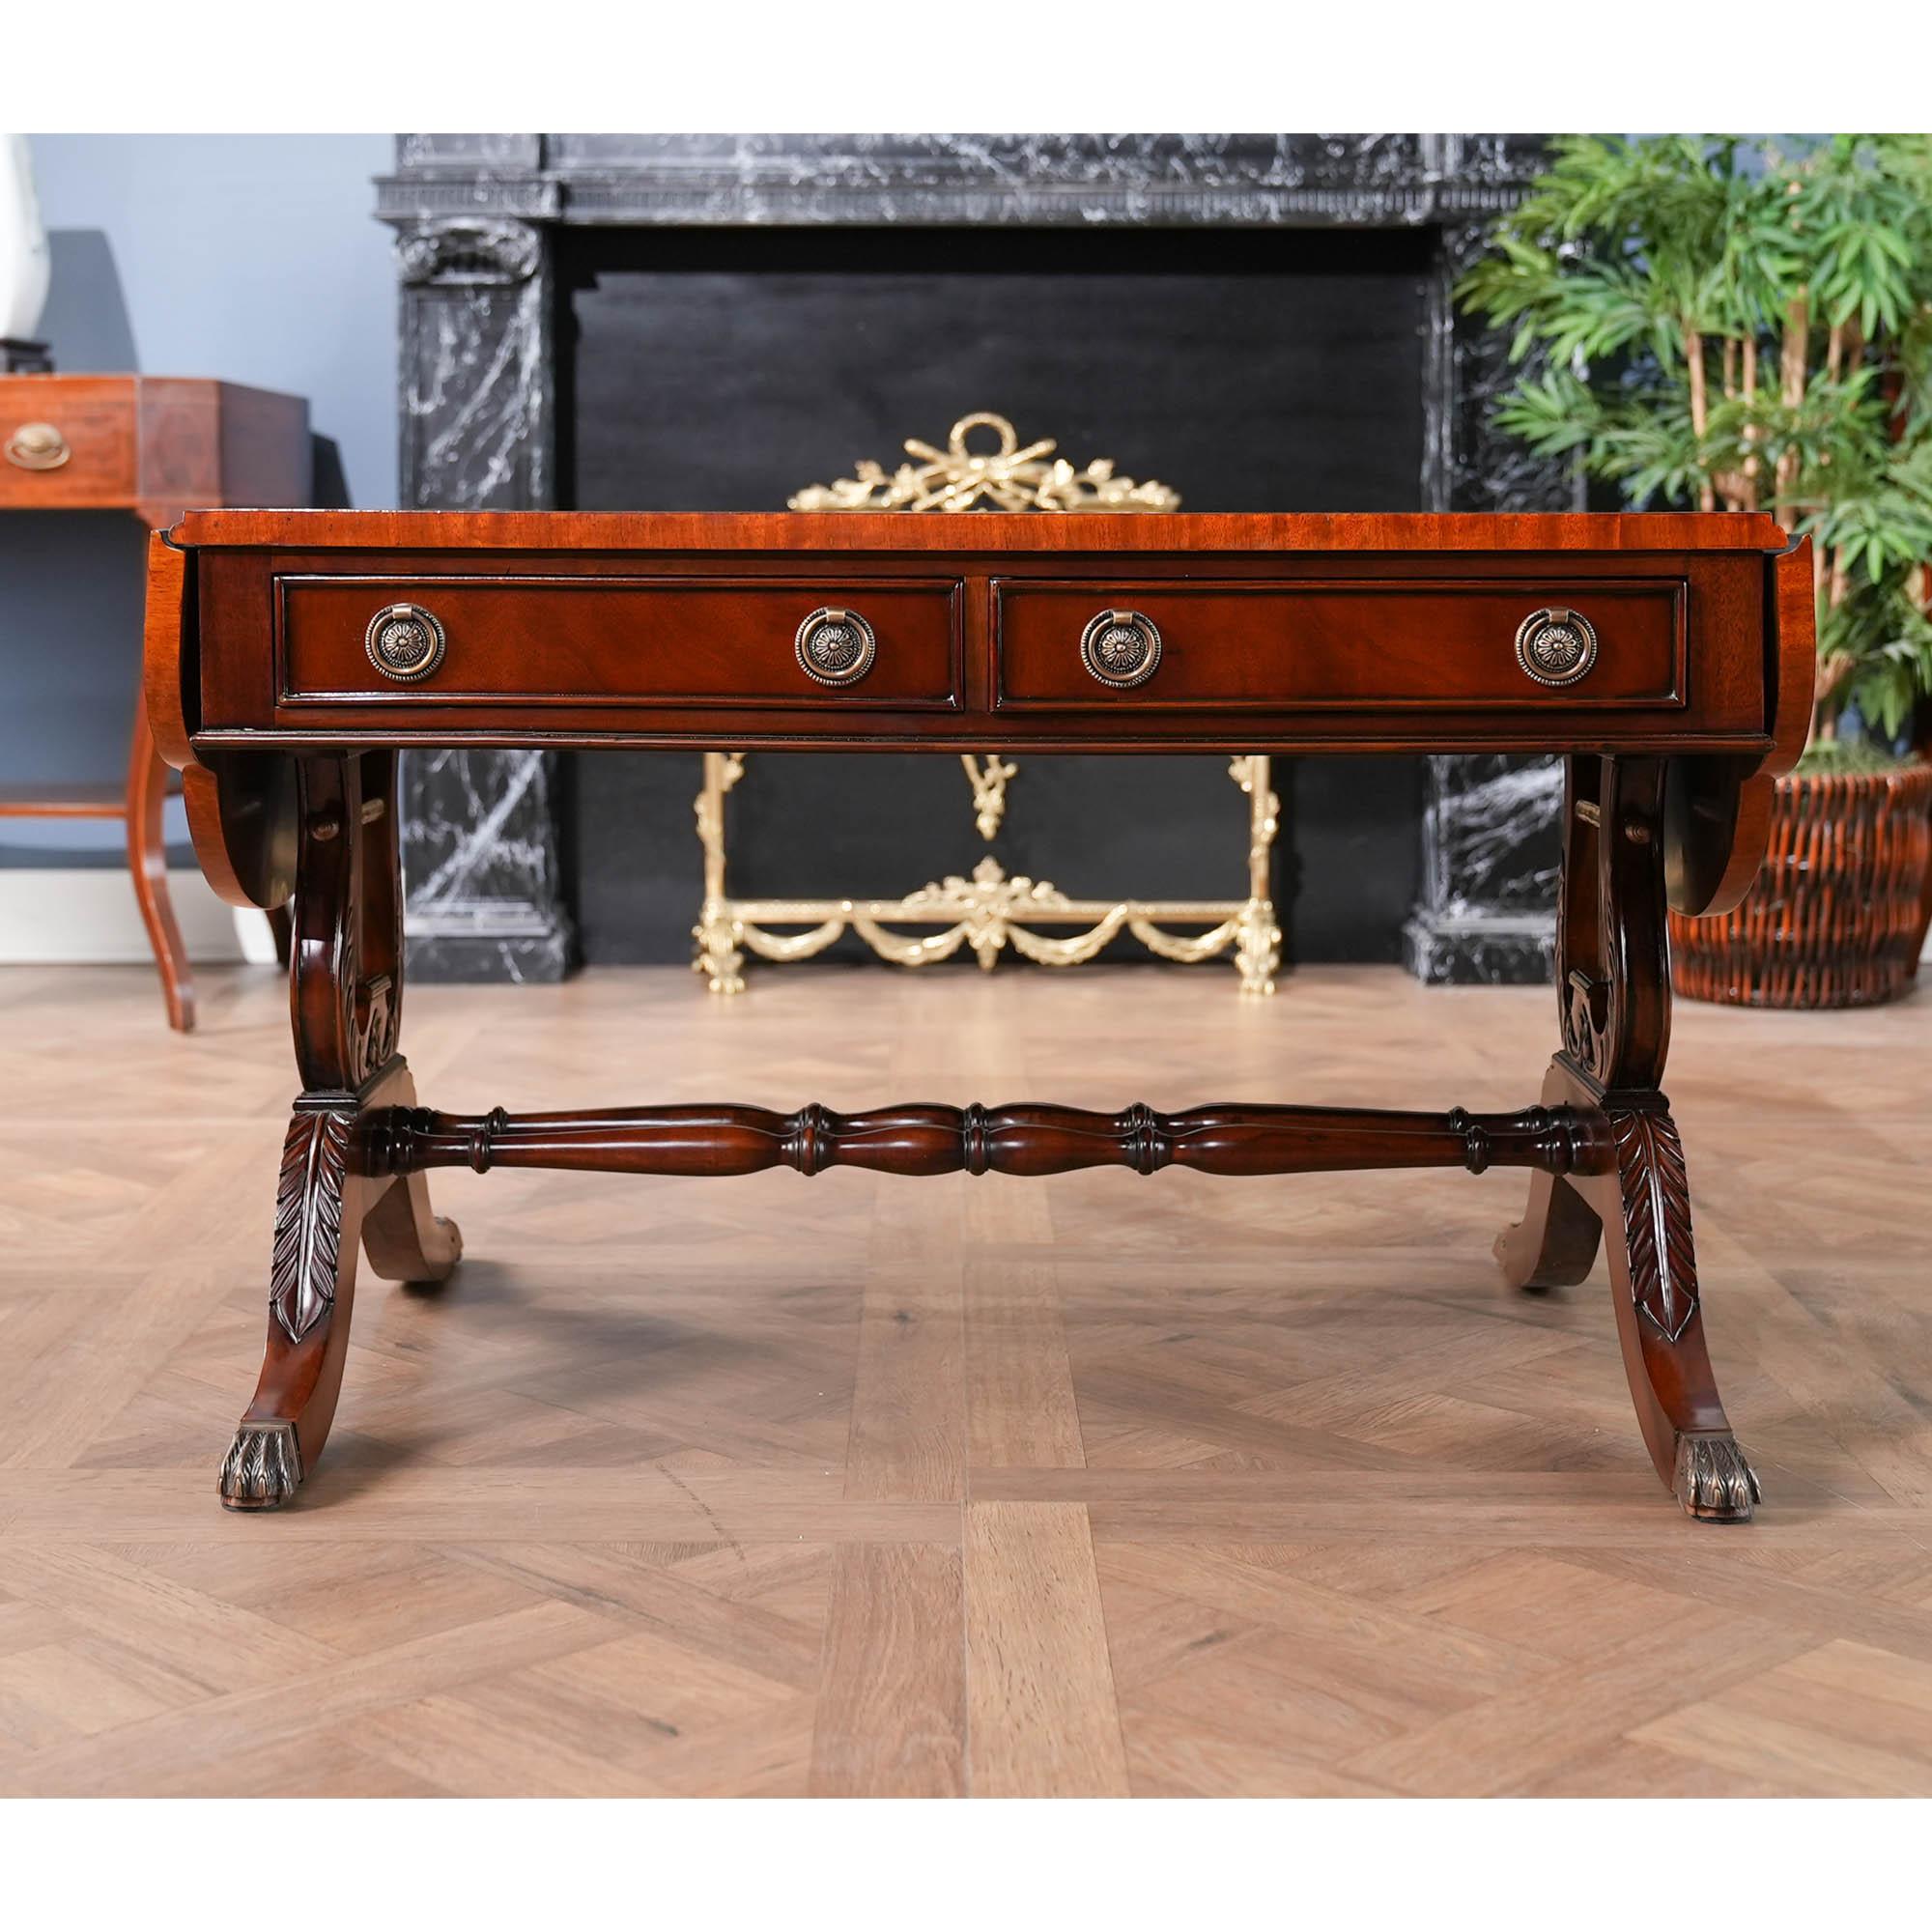 Un autre article de la collection de meubles Niagara Furniture inspirée de la lyre, cette table basse Dropside a un plateau magnifiquement travaillé avec des figures en acajou et en bois satiné, quatre tiroirs à queue d'aronde et deux feuilles de